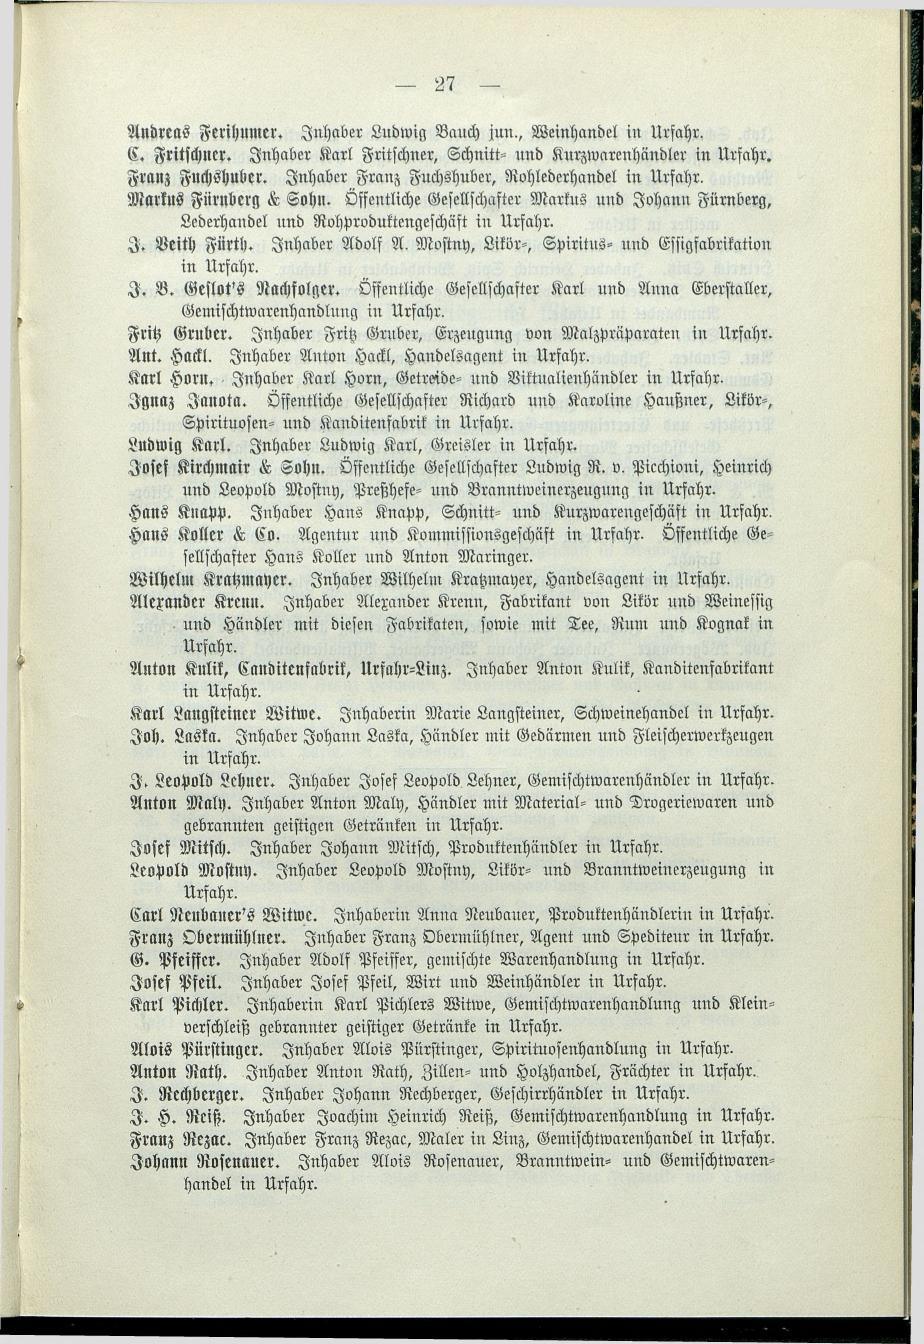 Verzeichnis der protokollierten Firmen und Genossenschaften in Oberösterreich 1908 - Seite 31